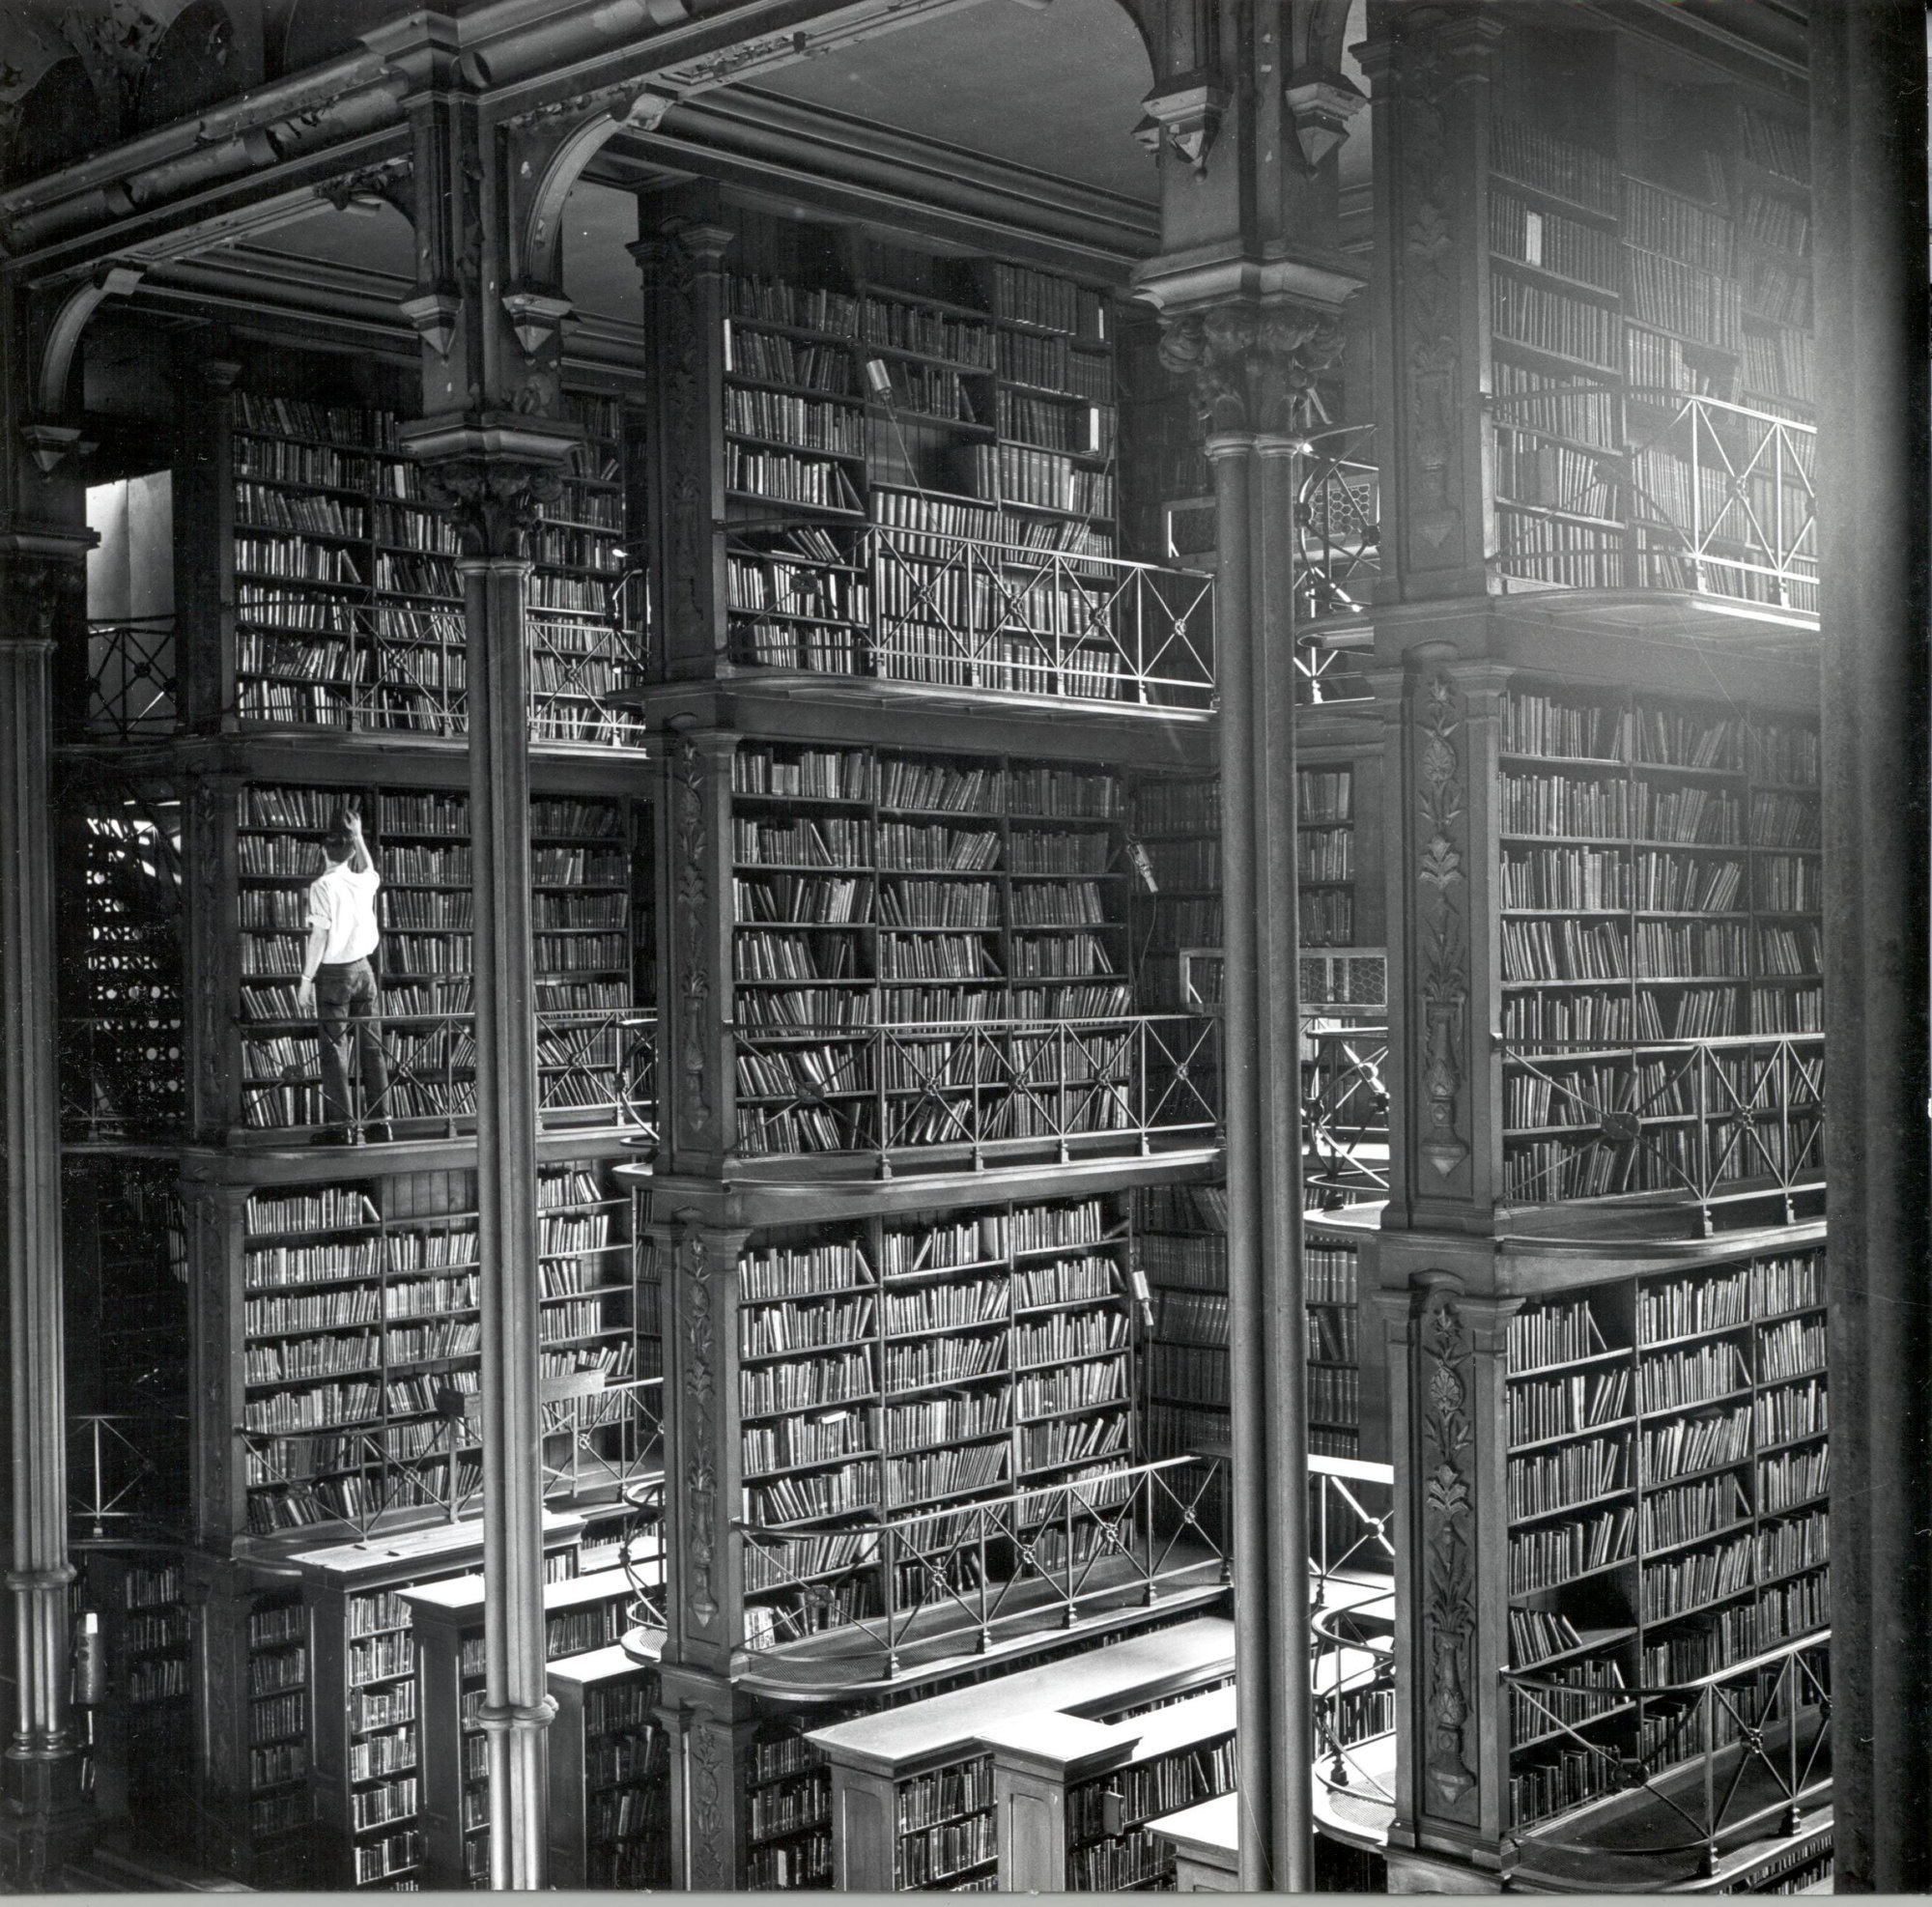 1955: Public Library Cincinnati & Hamilton County, originally built in 1874 and demolished in 1955.